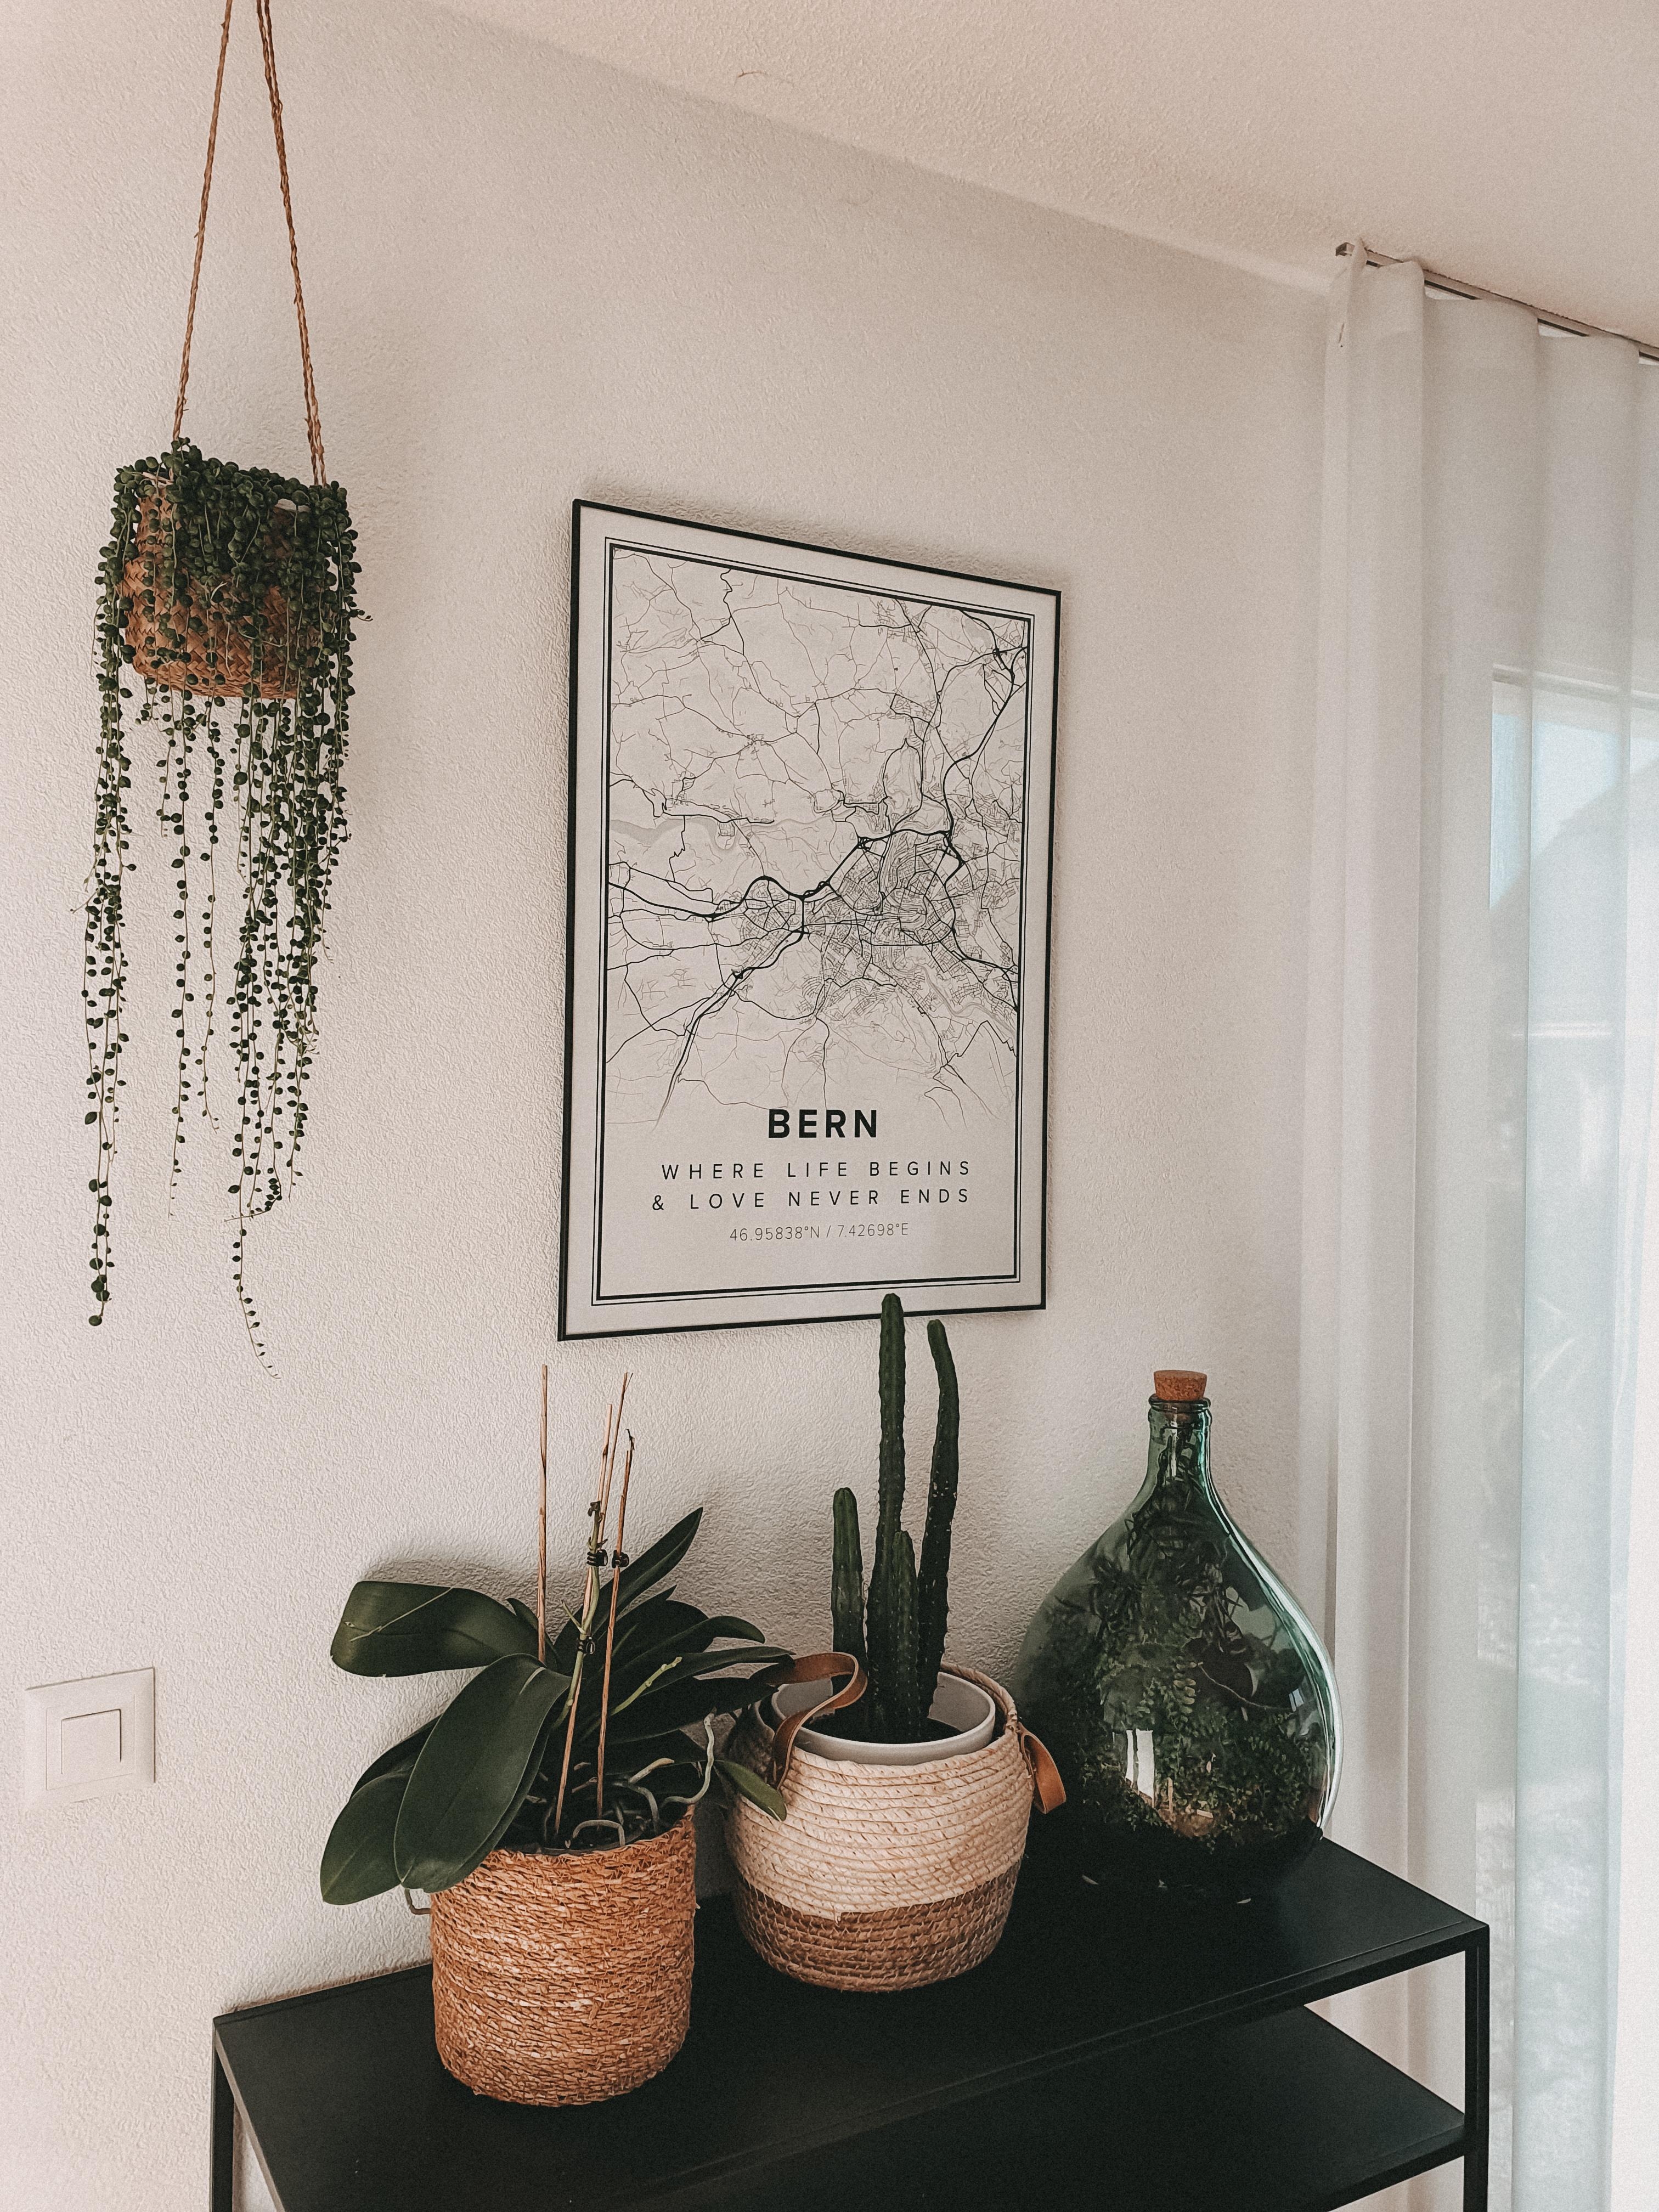 Pflanzen kann man nie genug haben 🌿💕

#pflanzenliebe #dekoinspo #couchstyle